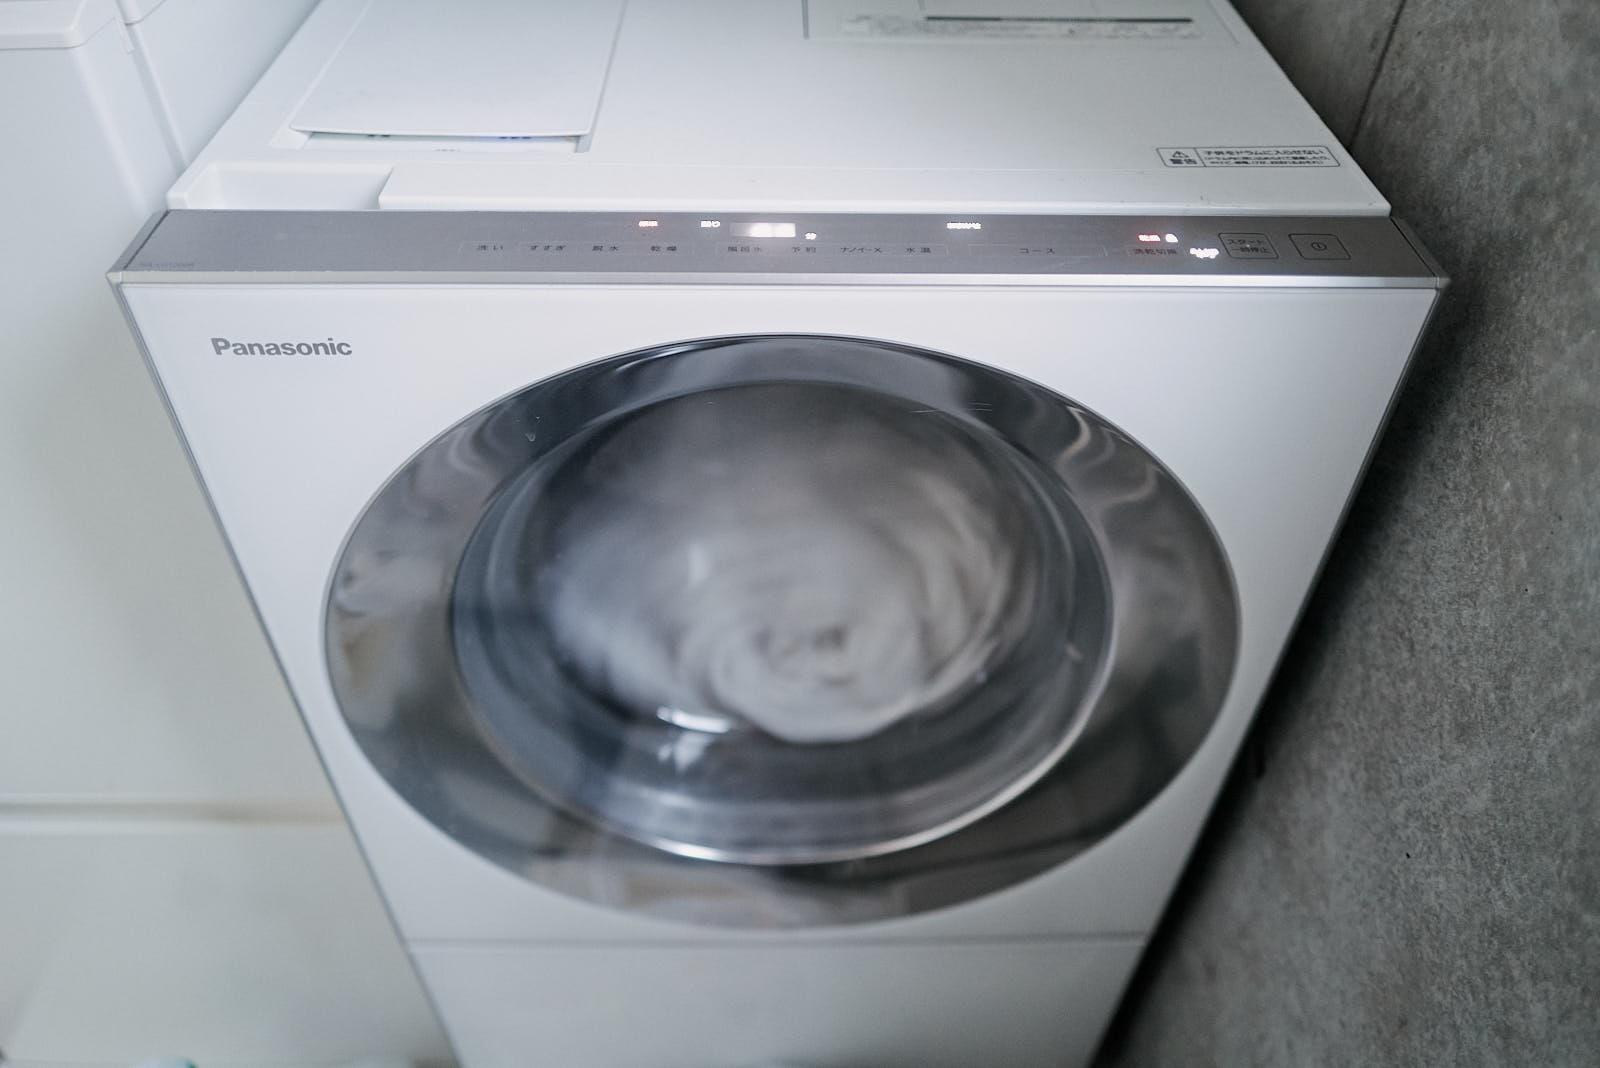 ドラム式洗濯機を買うと服が減る。変わるのは洗濯じゃなく“生活